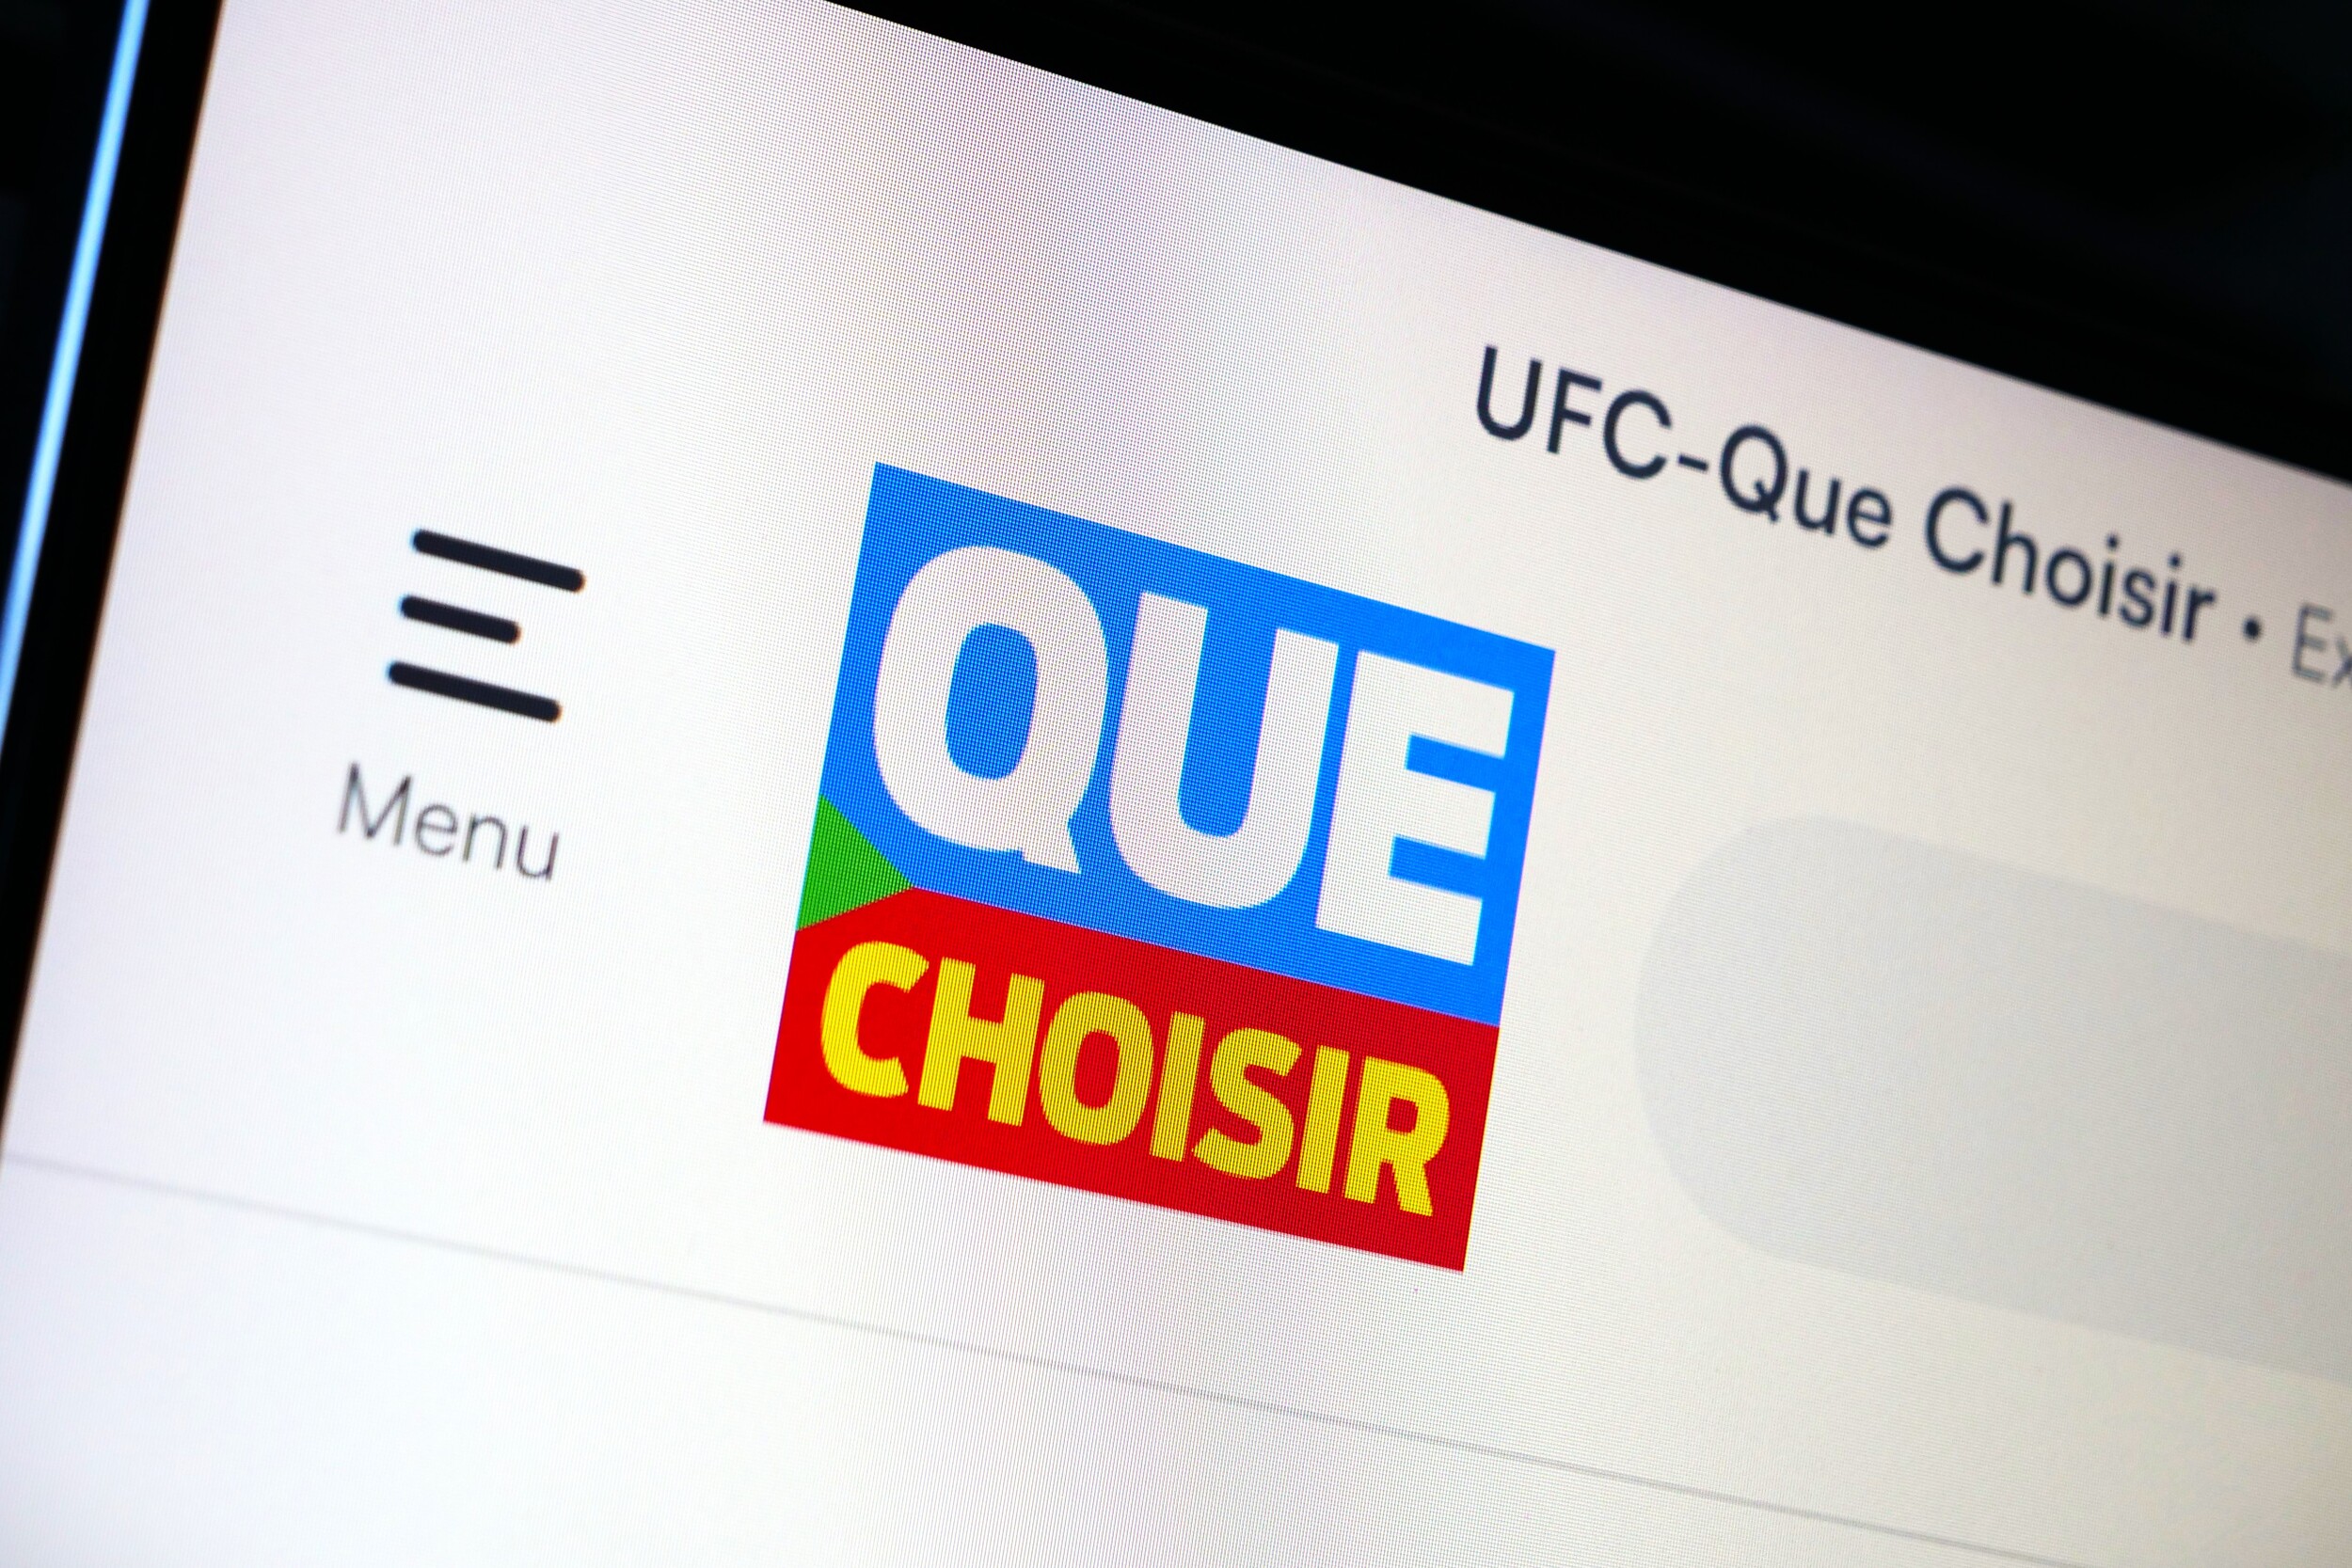 Pour 10 sites web consultés, vous êtes pisté plus de 4 000 fois, selon l'UFC-Que Choisir